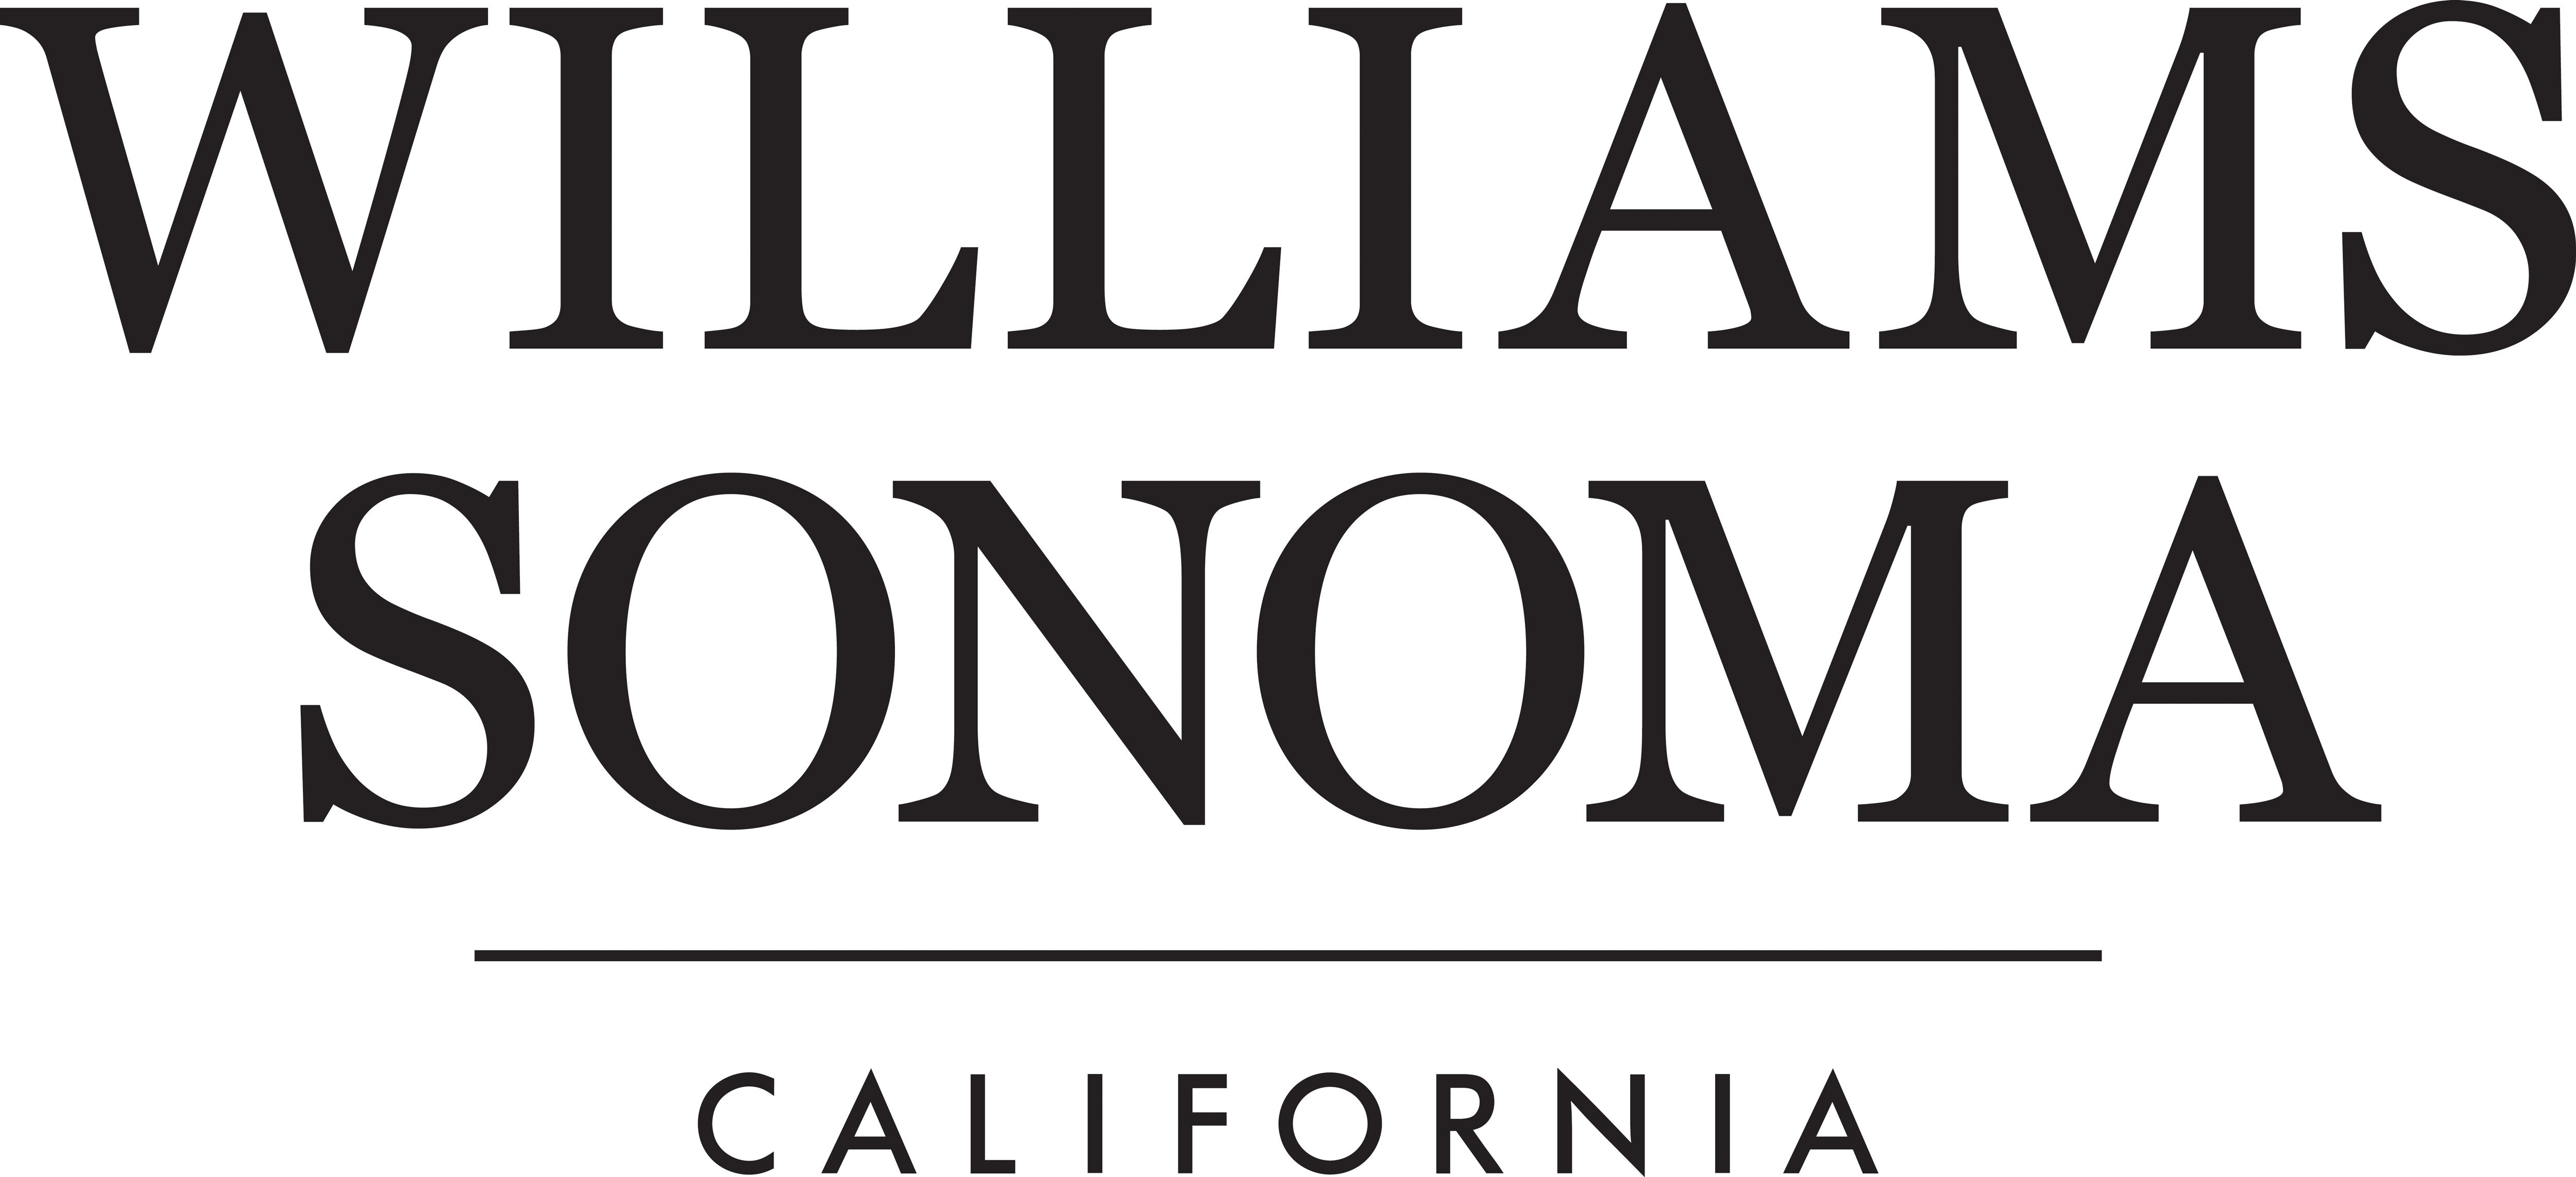 https://mms.businesswire.com/media/20211110006043/en/811716/5/WS_California_Logo_Black_CMYK_2.jpg